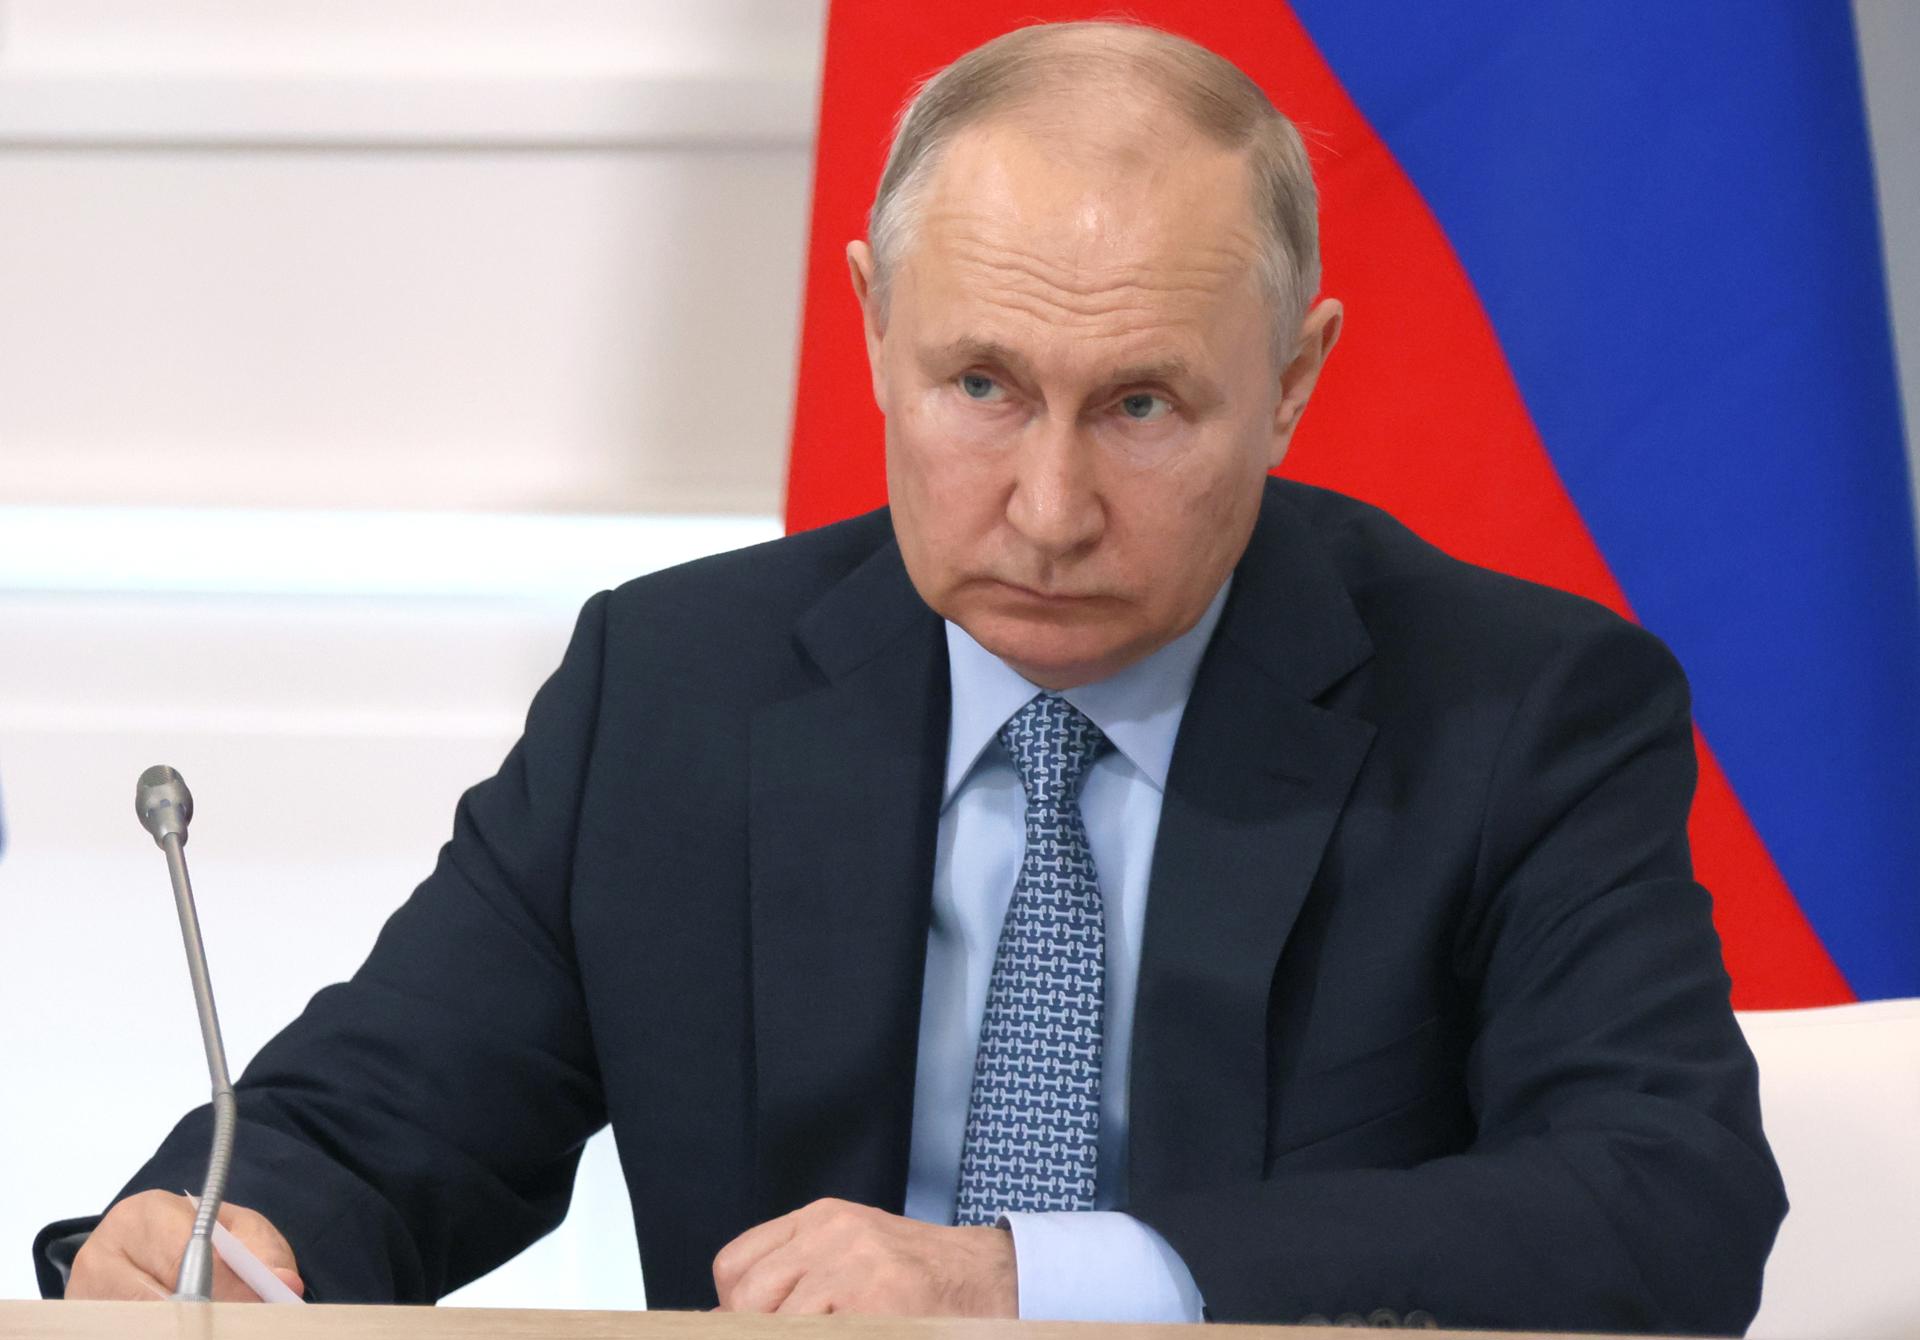 Rusia busca exhibir normalidad: Vladimir Putin habló por primera vez tras la rebelión del grupo Wagner